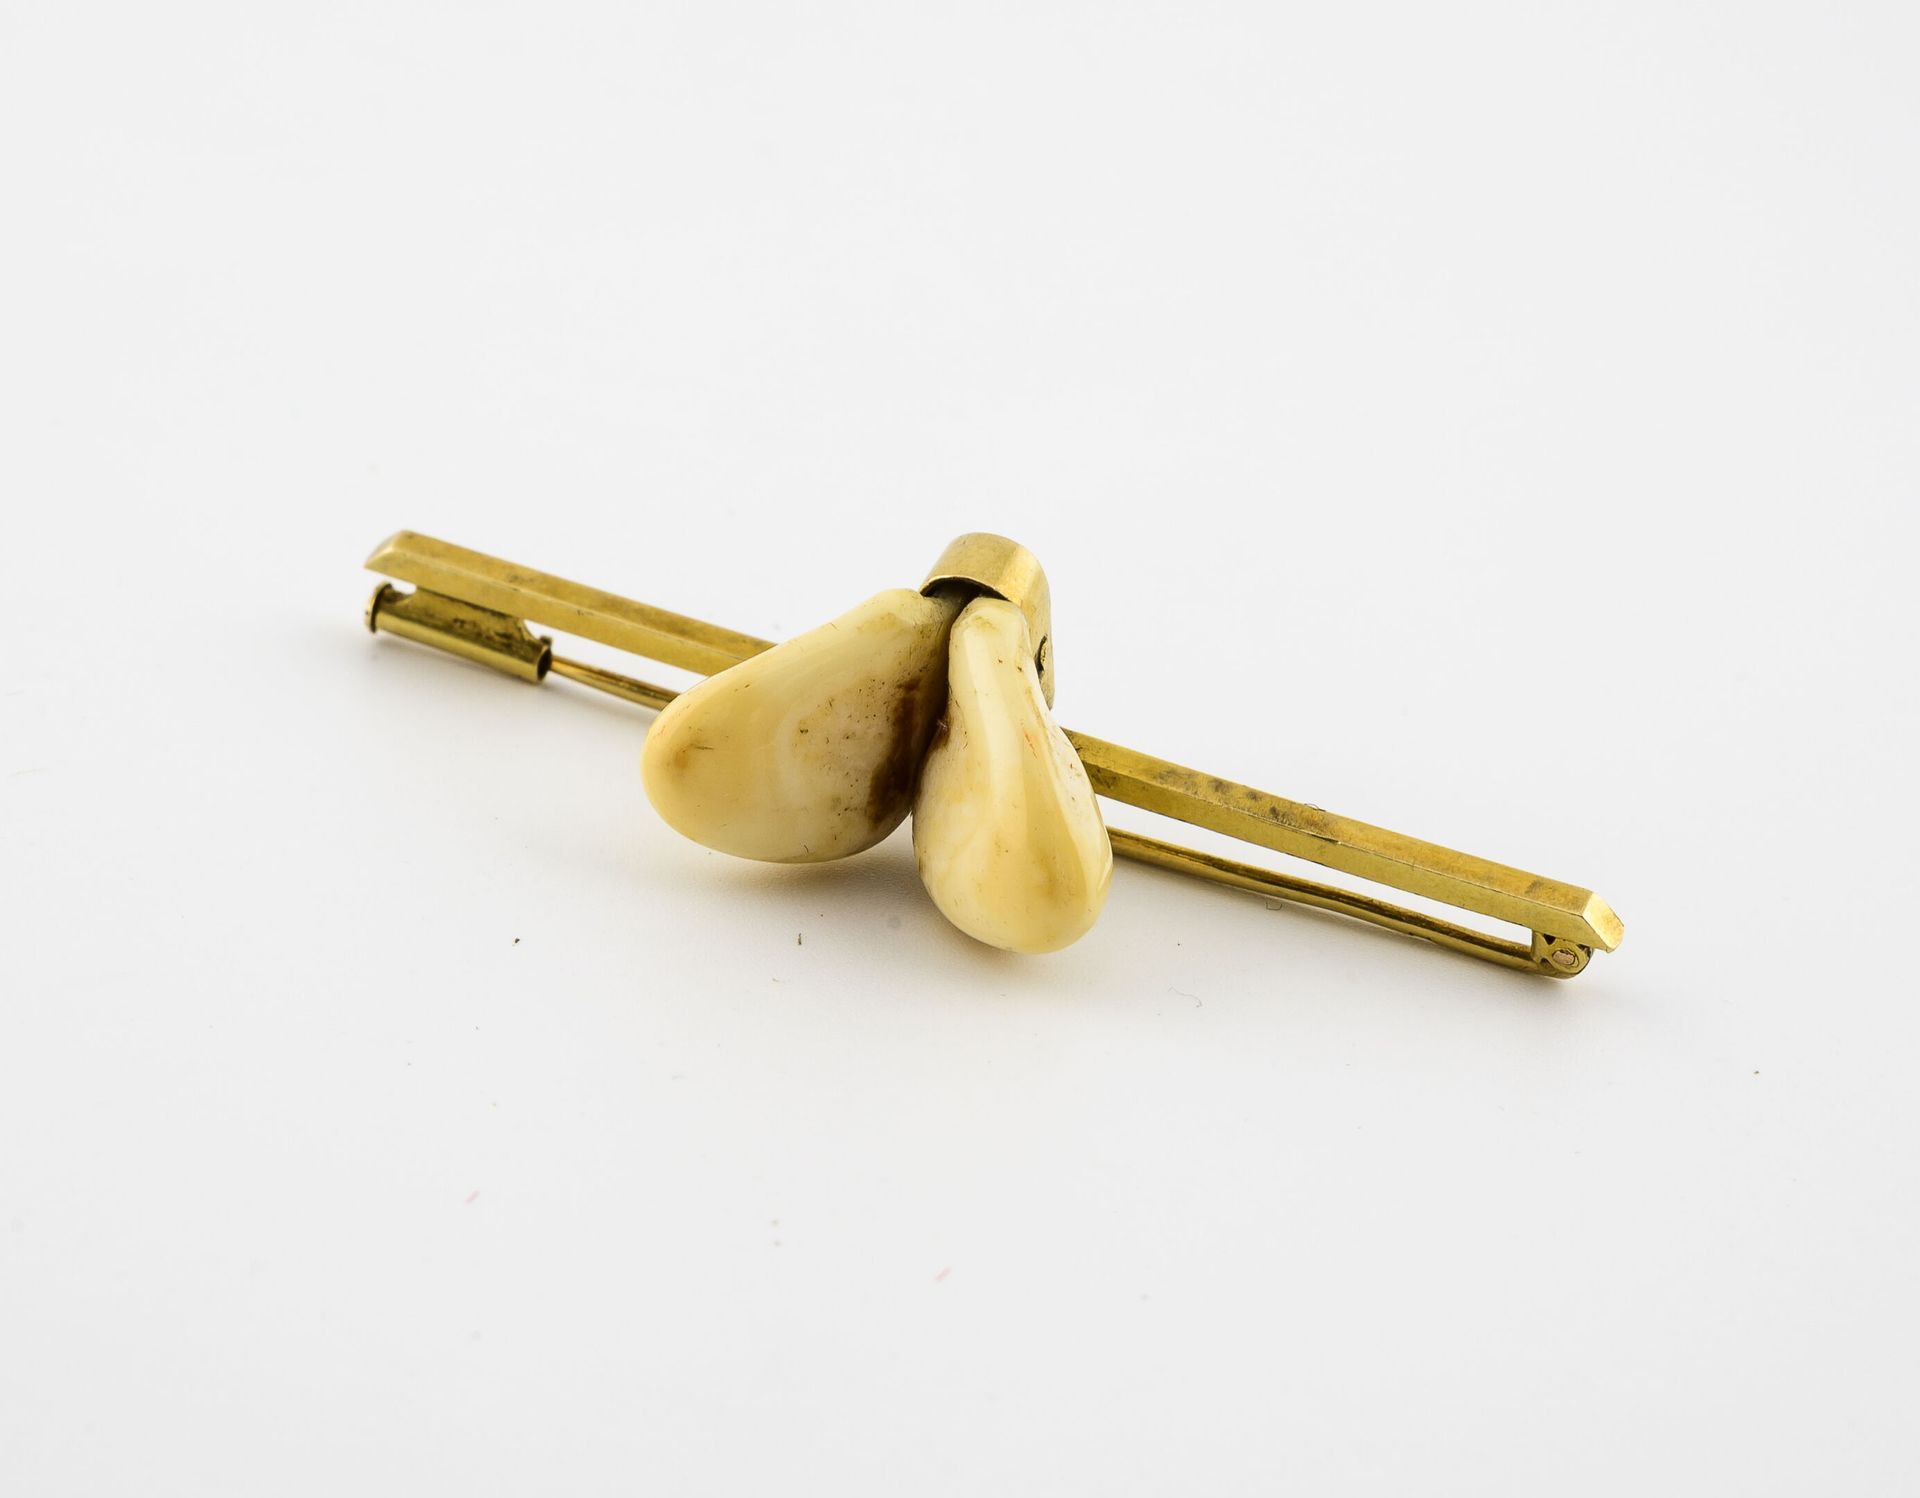 Null 黄金（750）船员胸针；黄金（750）胸针上有两颗鹿牙。

毛重：6.4克。- 长度：5.5厘米。 

磨损，使用时有划痕，牙齿晃动。